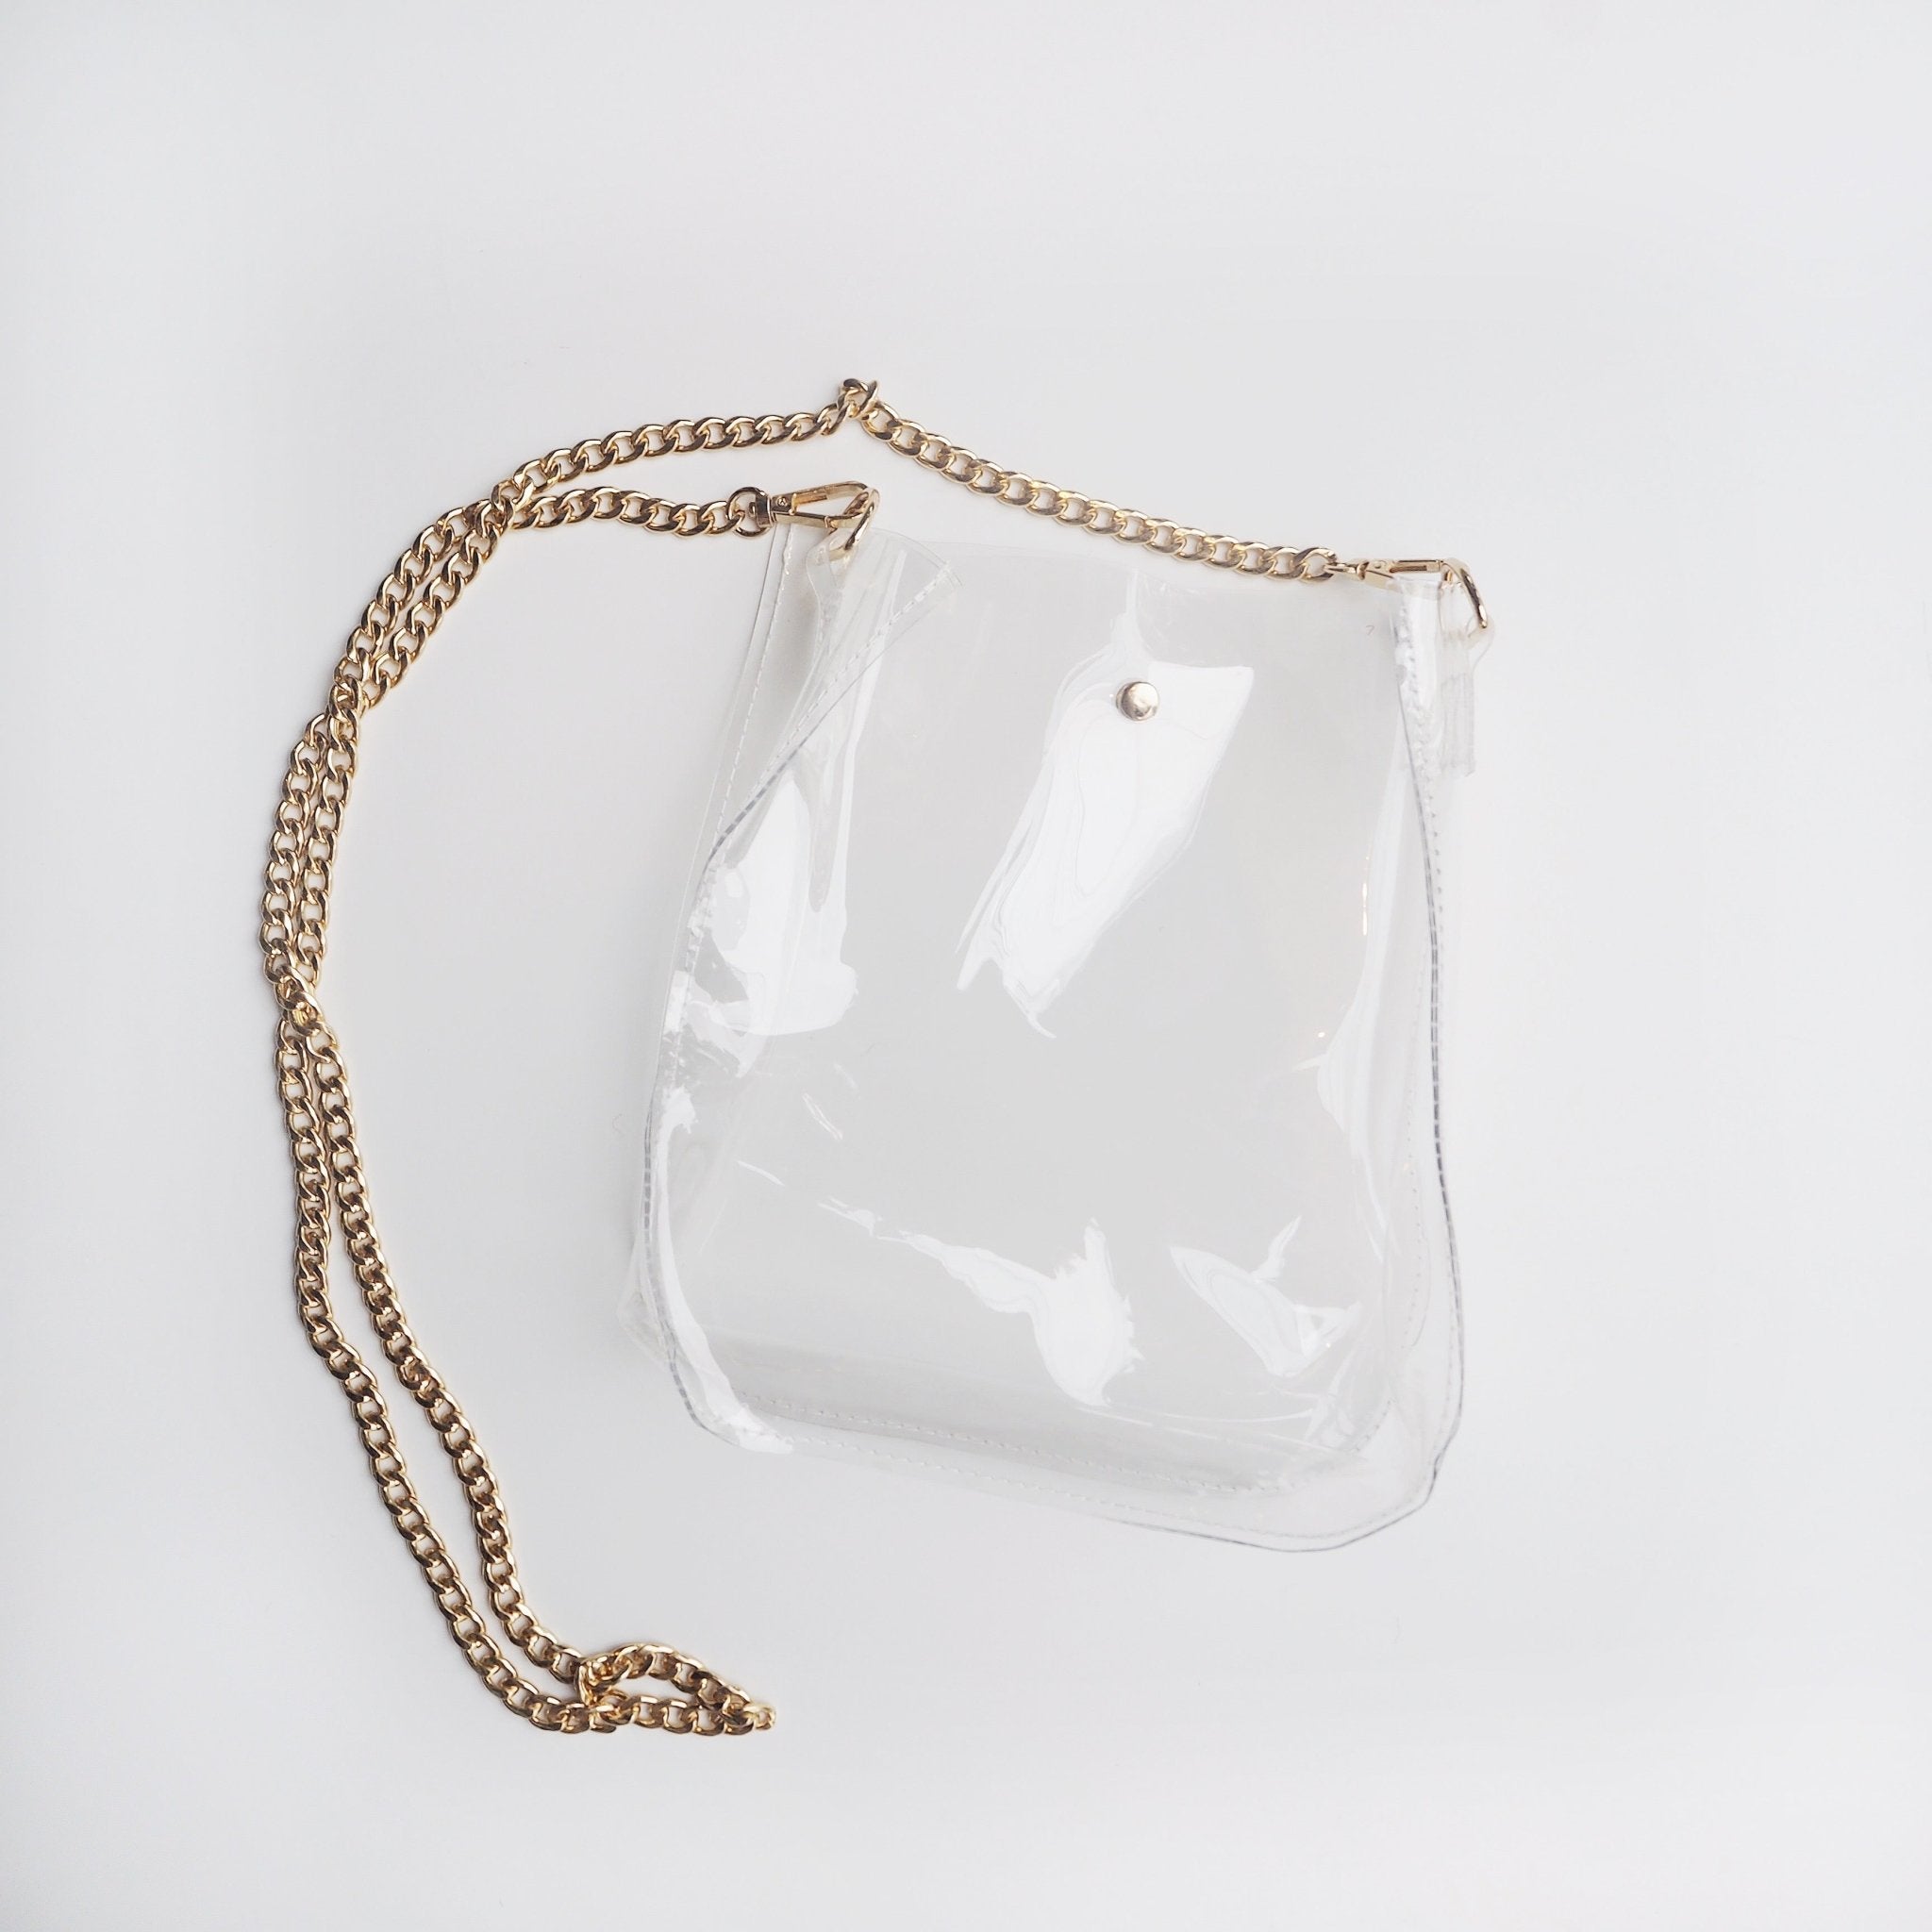 Nordstrom designer clearance sale: 12 best bags under $500 to shop on sale